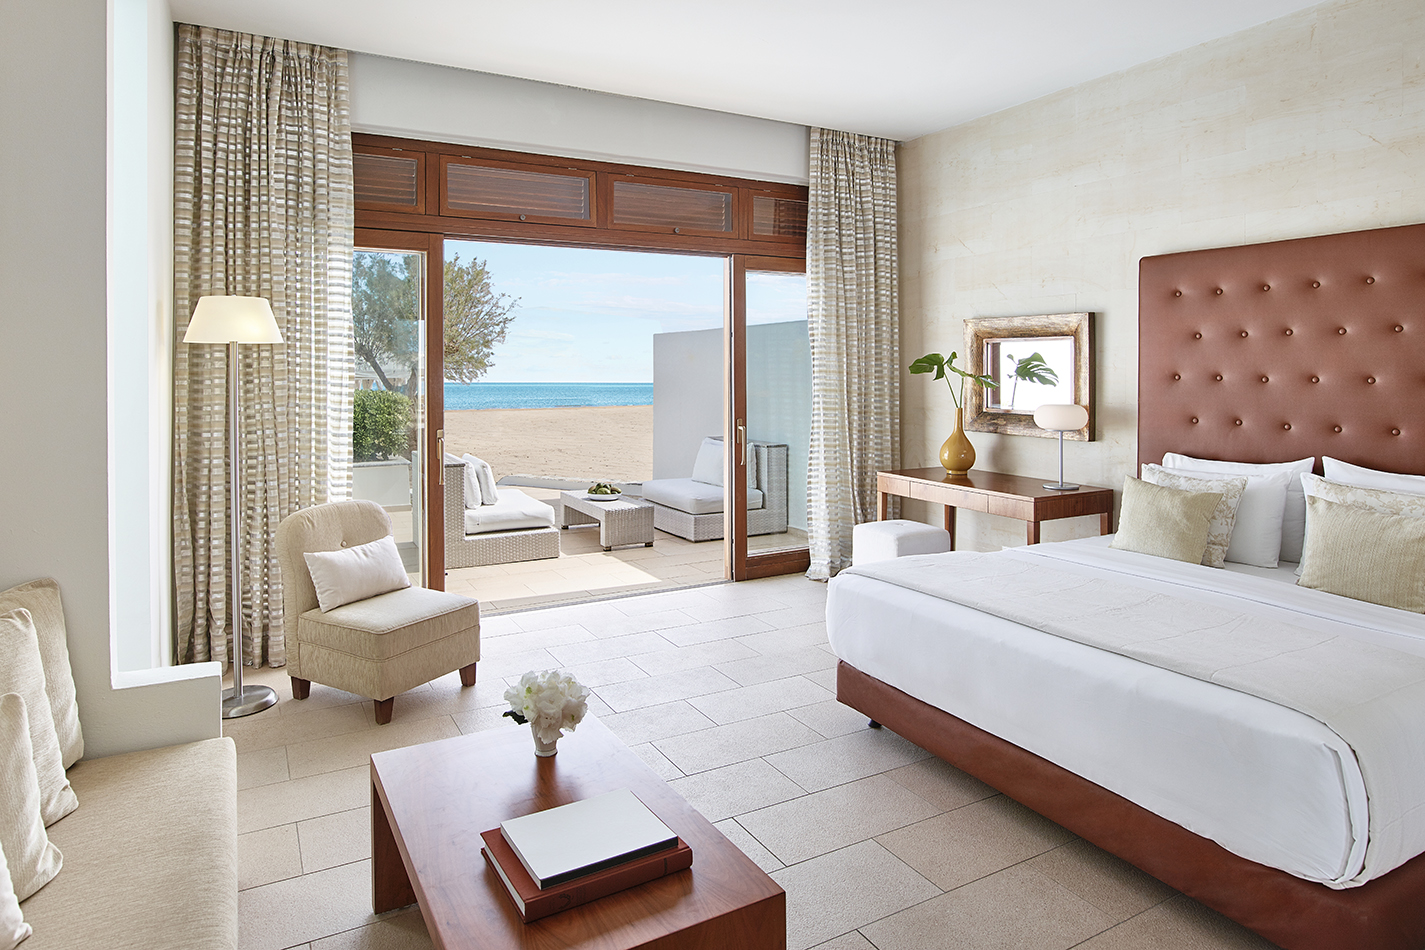 Amirandes_11_Creta-Beach-Villas-Seafront-Bedroom